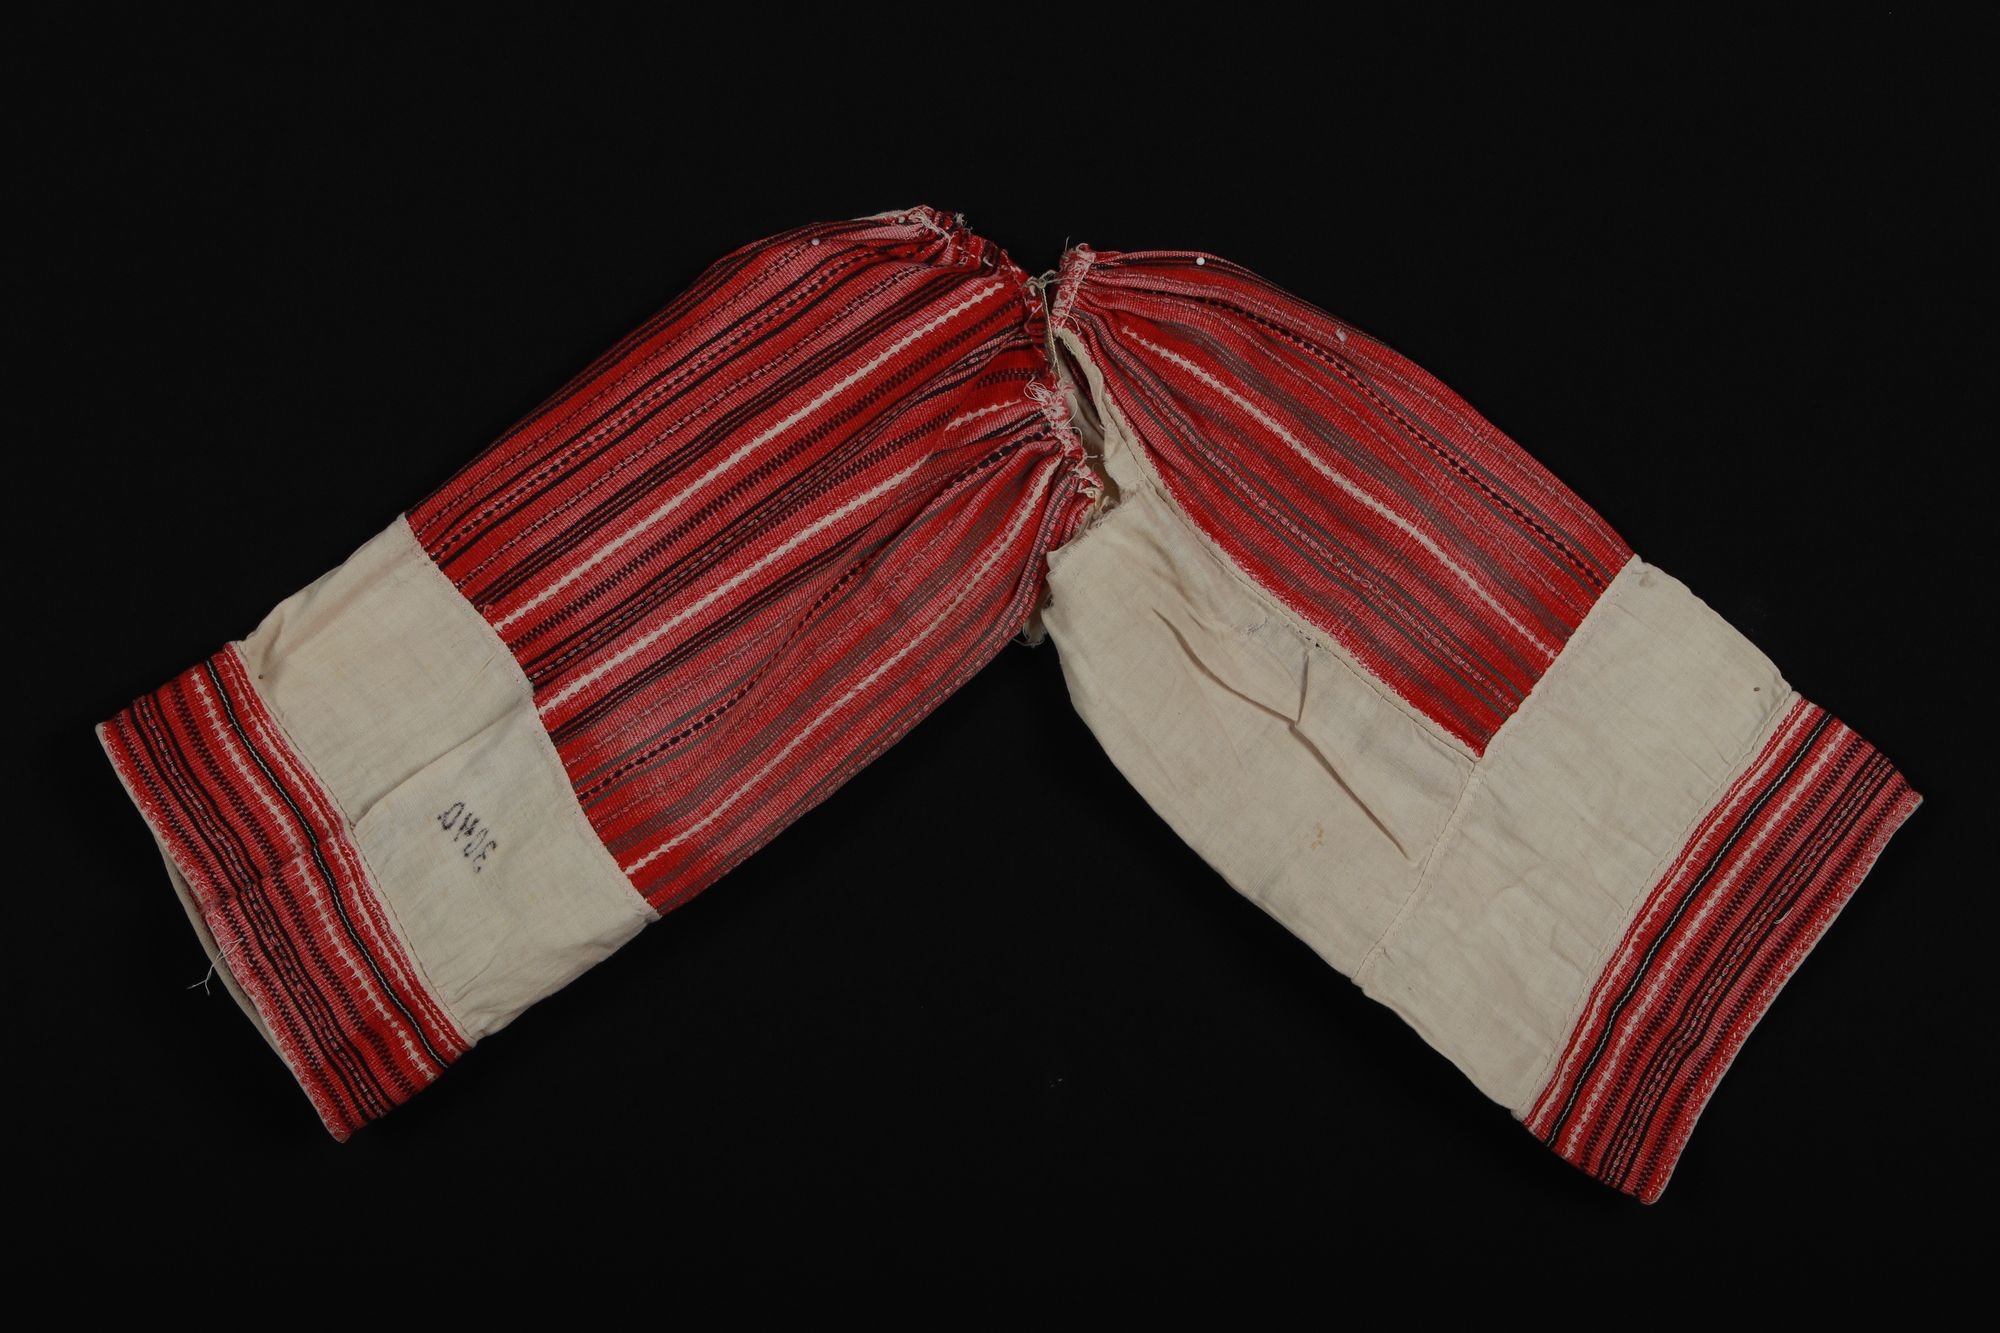 Női ingujjrészlet (Rippl-Rónai Múzeum CC BY-NC-SA)